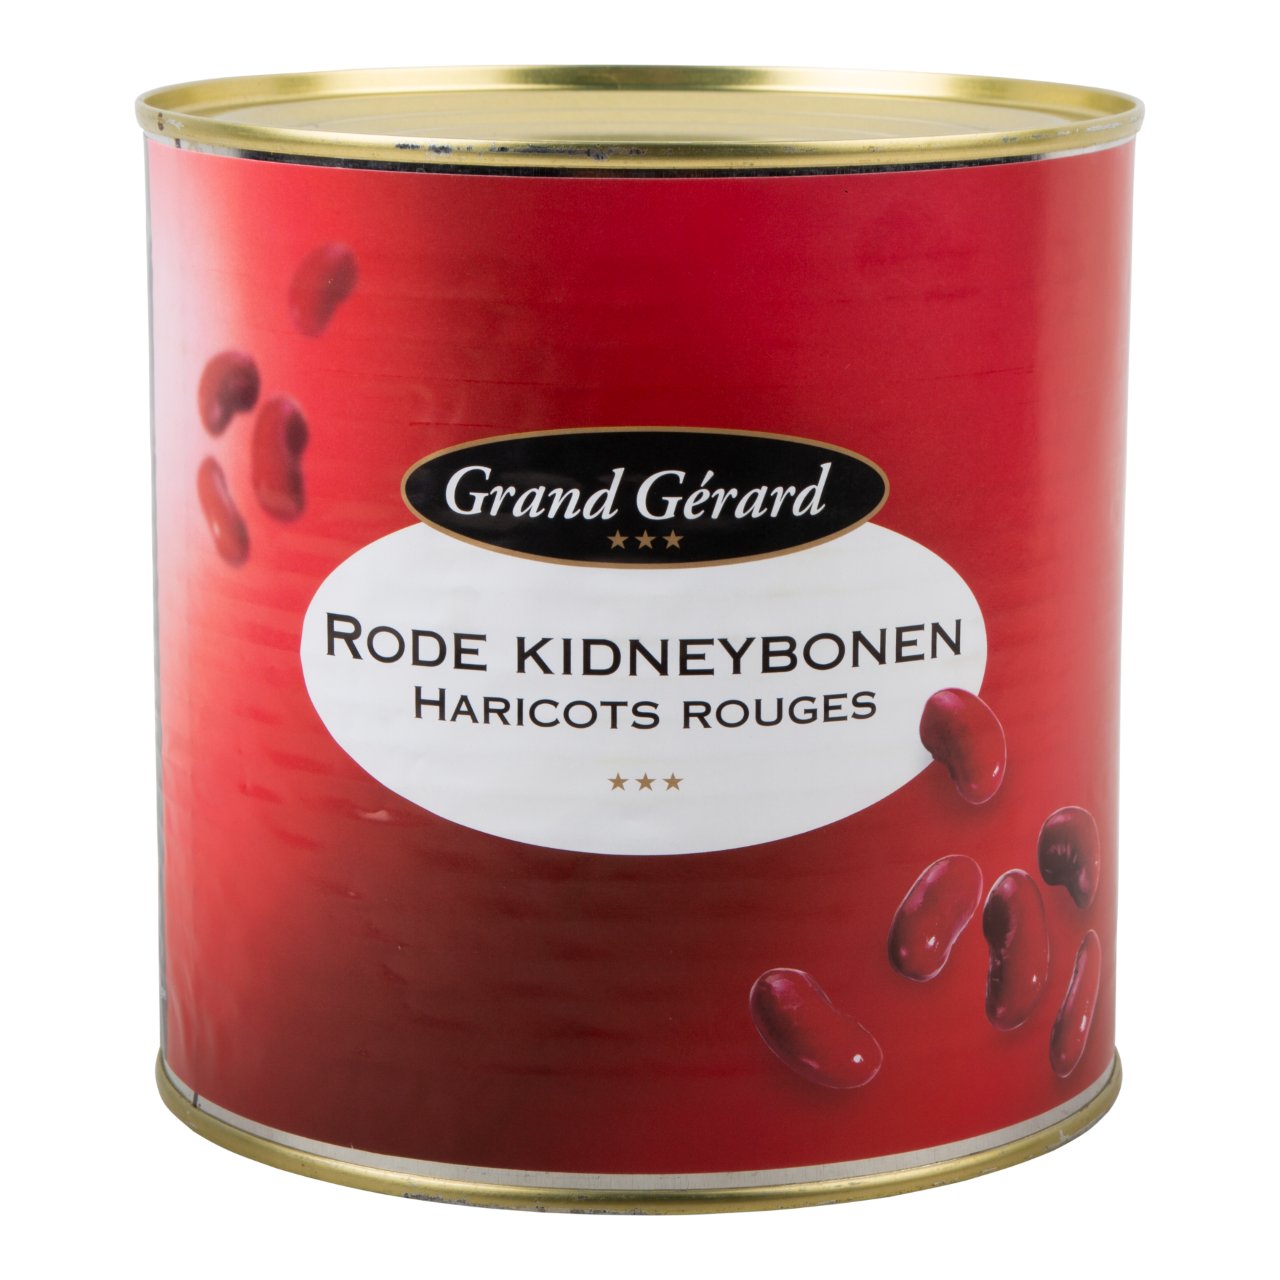 Rode kidneybonen